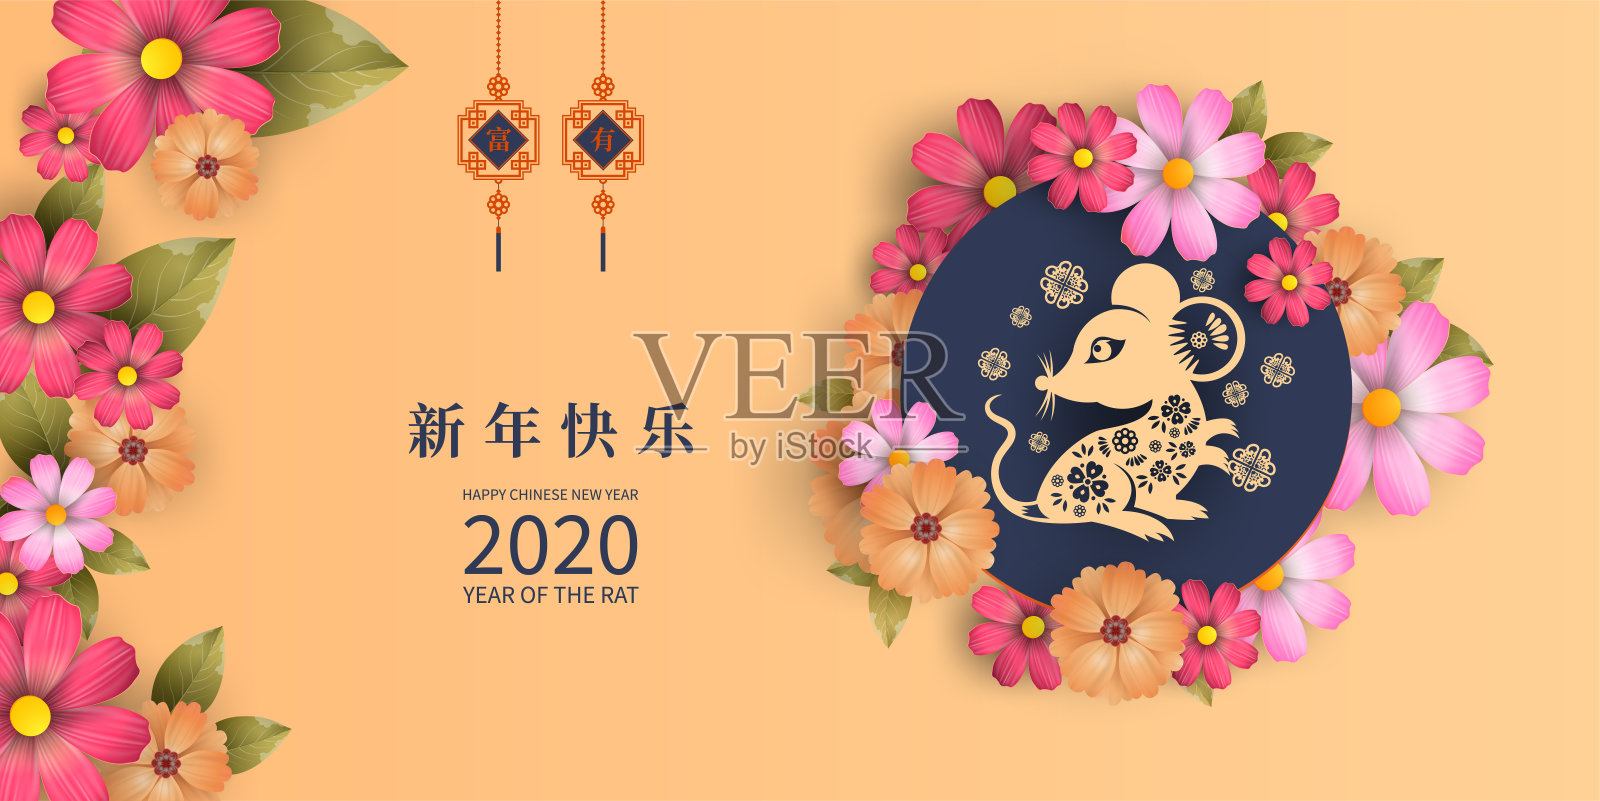 快乐中国新年2020鼠年剪纸风格。汉字意味着新年快乐，富有。2020年农历新年。贺卡、请帖、海报、横幅、日历等十二生肖标志插画图片素材